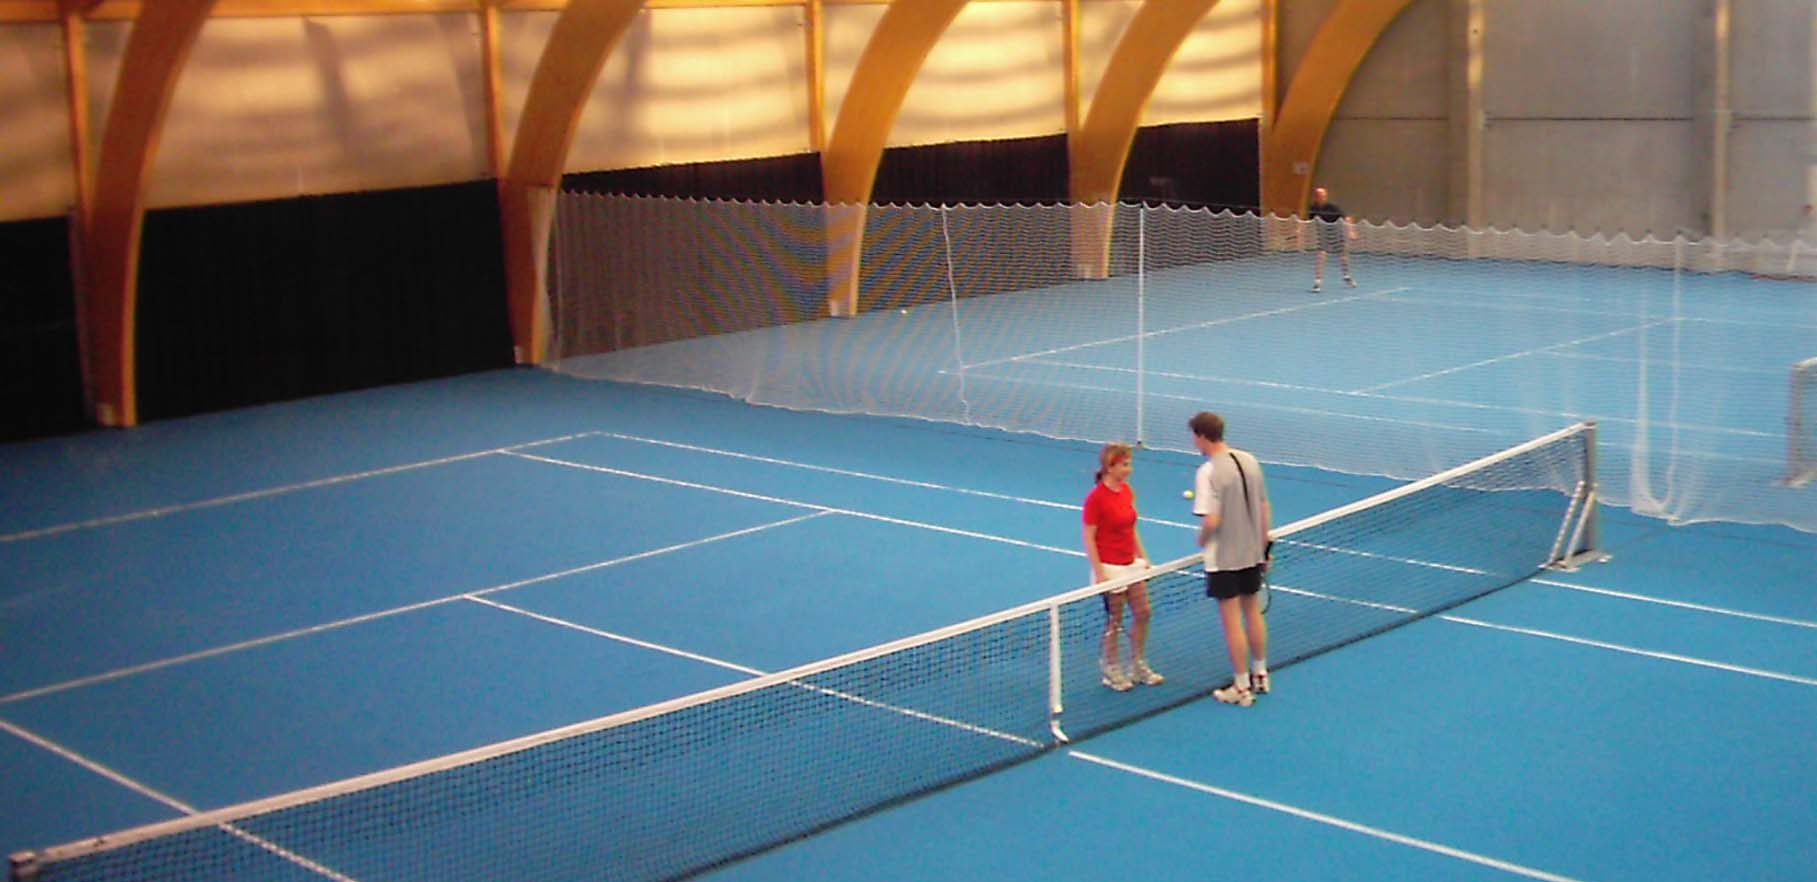 Ny Tennishal Ndr. Strandvej Helsingør Tennisklub ønsker mulighed for flere indendørsbaner, således at klubbens aktiviteter i højere grad kan ske over hele året.